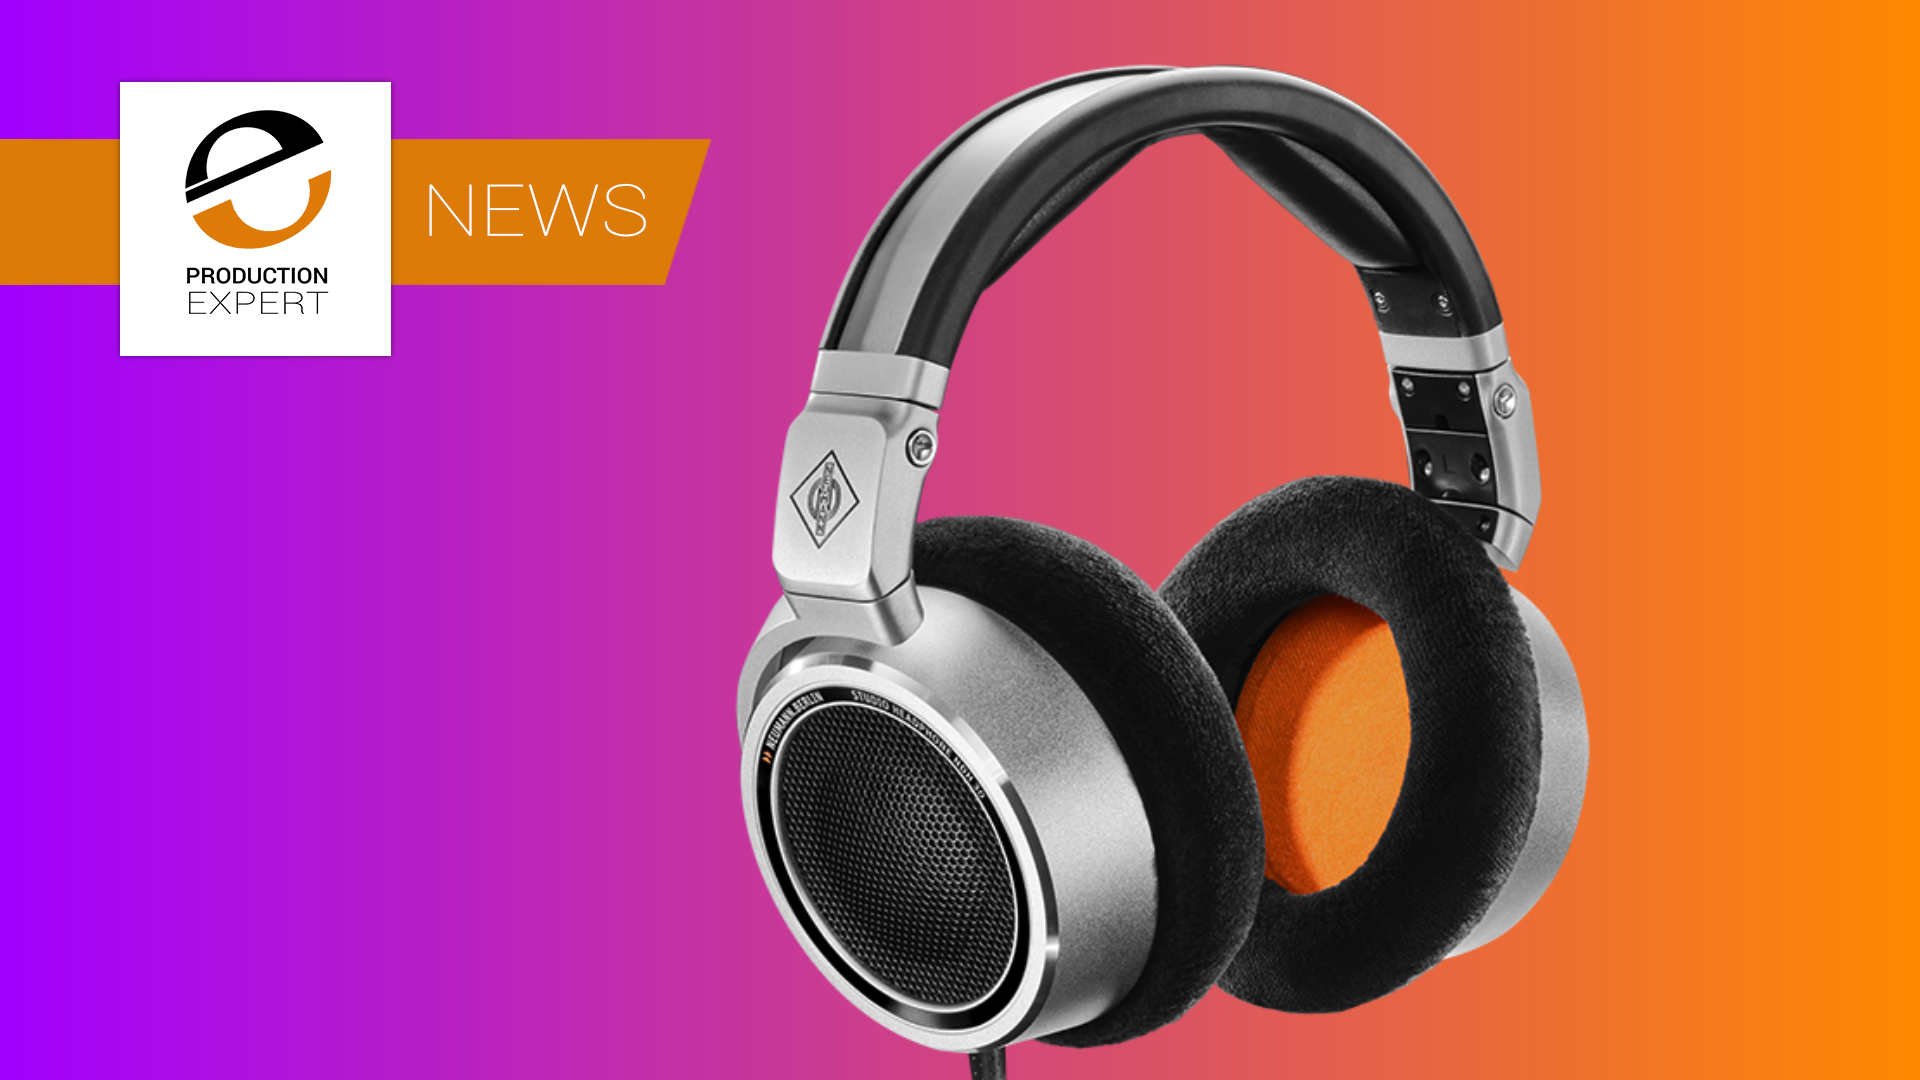 Neumann NDH-30 Open Back Headphones Announced | Production Expert